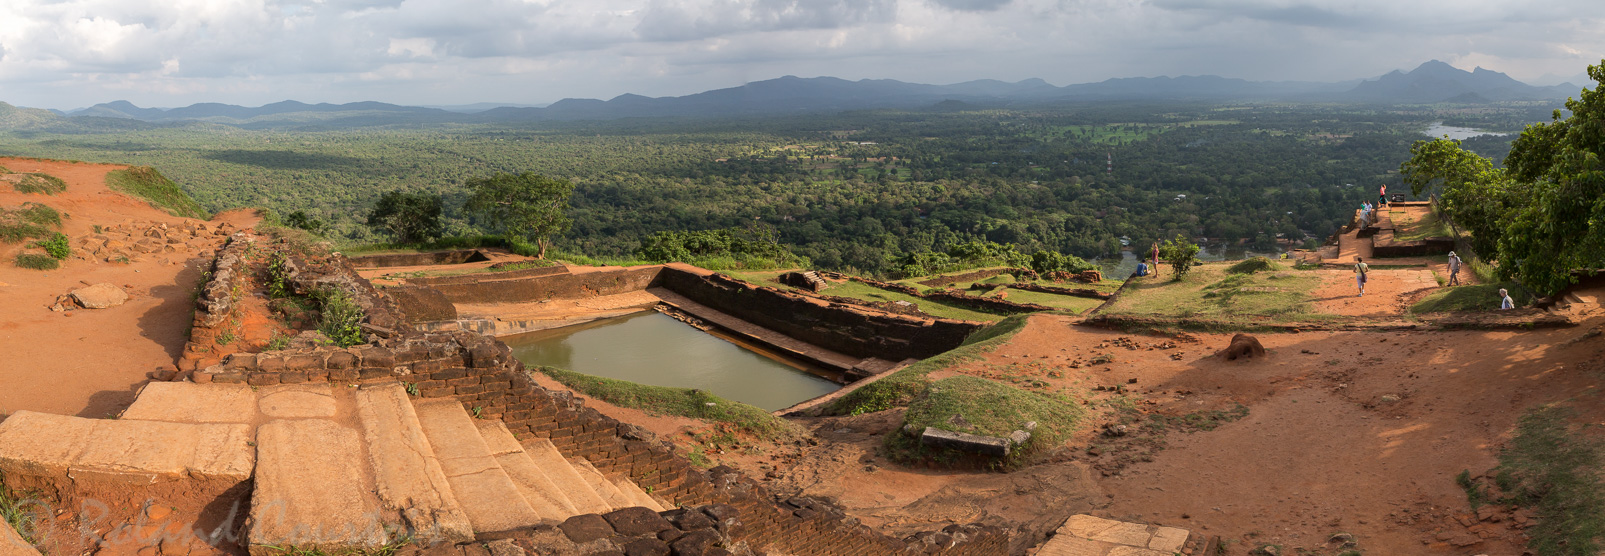 Au sommet du rocher de Sigiriya, on peut admirer les vestiges d’un immense palais où régna pendant dix-huit ans le roi Kassyapa à la fin du 5ème siècle.